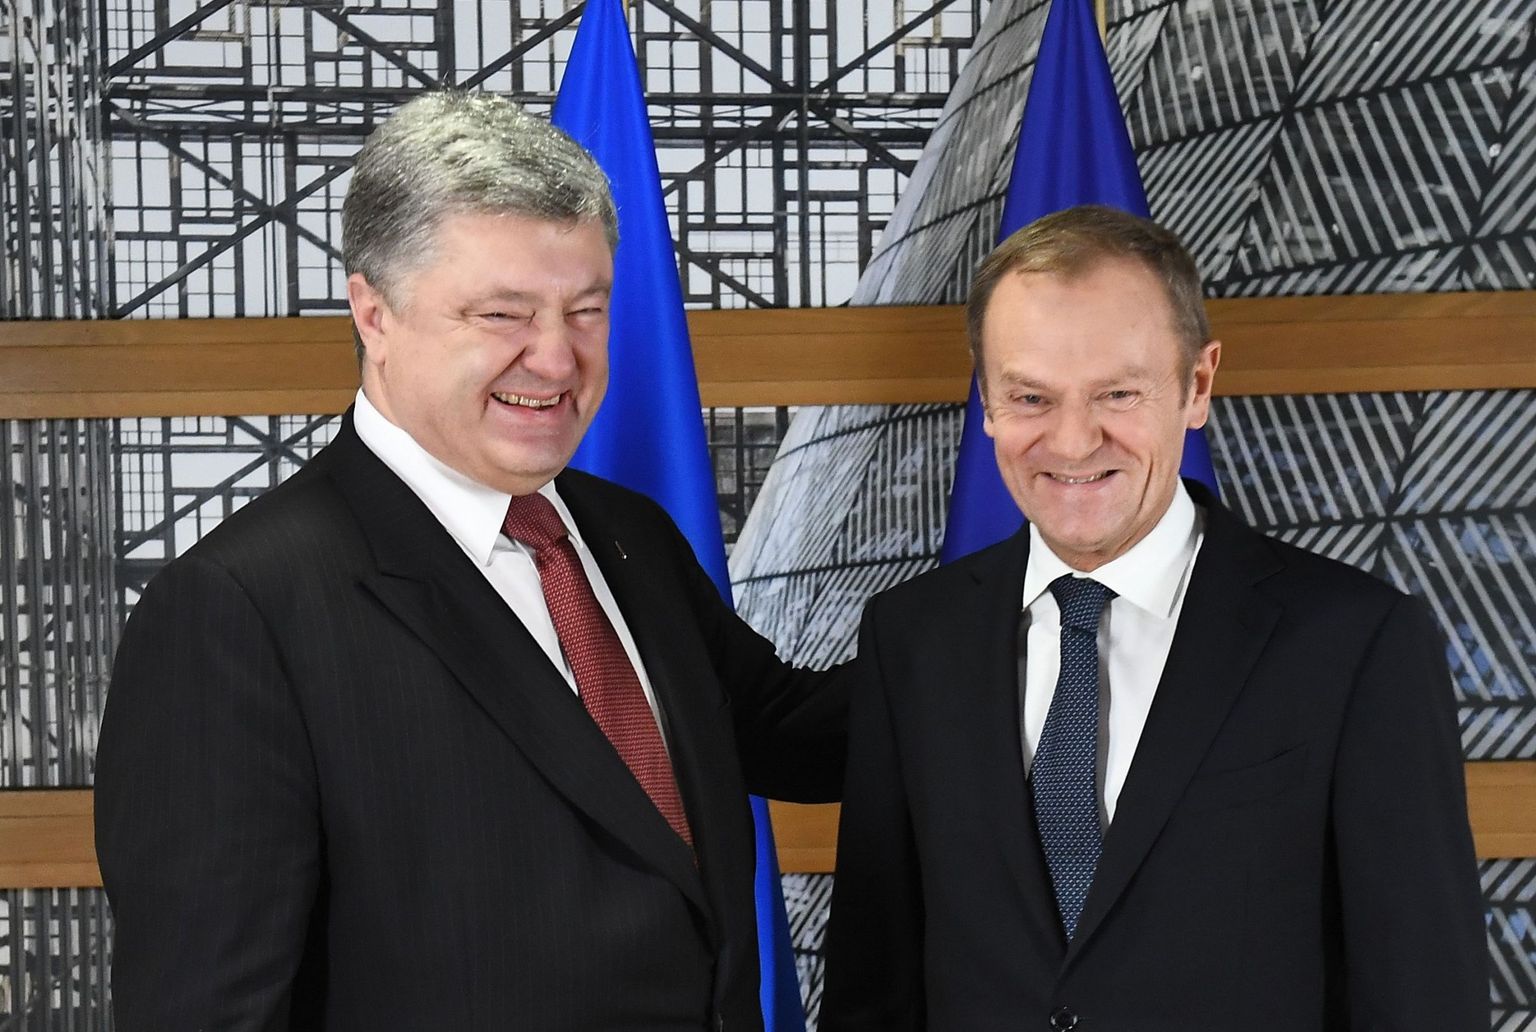 Kuigi väidetavalt on Ukraina liikmelisuse perspektiivi mittesaamise peale pahane, paistis president Petro Porošenko (vasakul) eilsel paraadpildil ELi liidunõukogu presidendi Donald Tuskiga päris rõõmus.